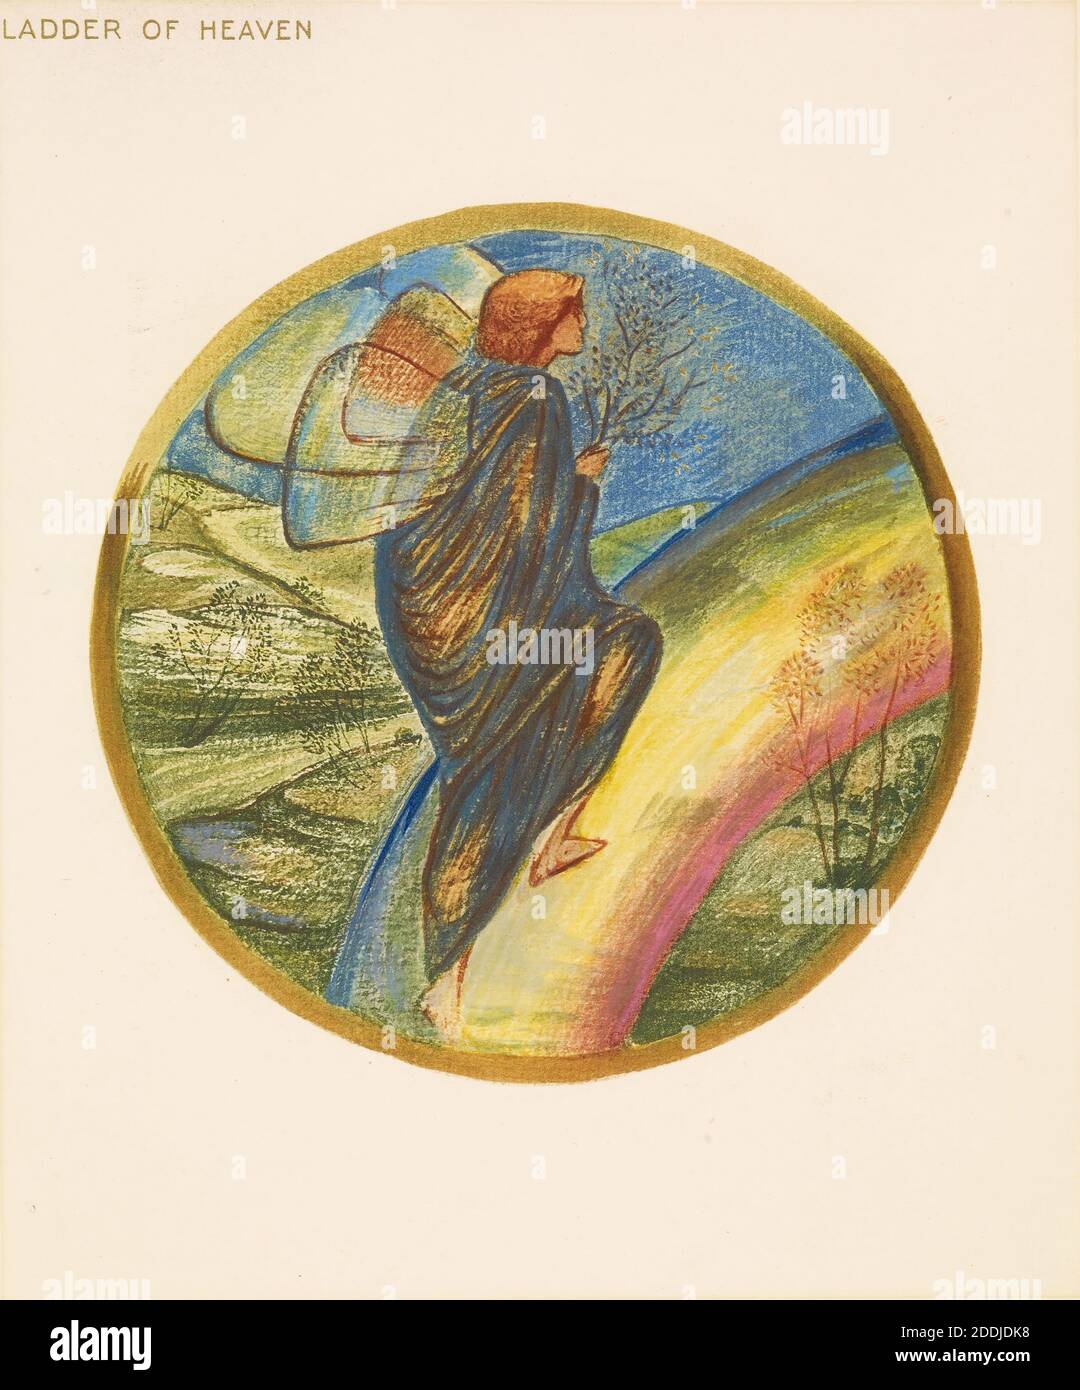 De The Flower Book, Ladder of Heaven, 1905 Sir Edward Burne-Jones, Libro, Movimiento artístico, Pre-Raphaelite, paisaje, siglo XIX, Flor, Arco Iris, impresión, Collotipo Foto de stock